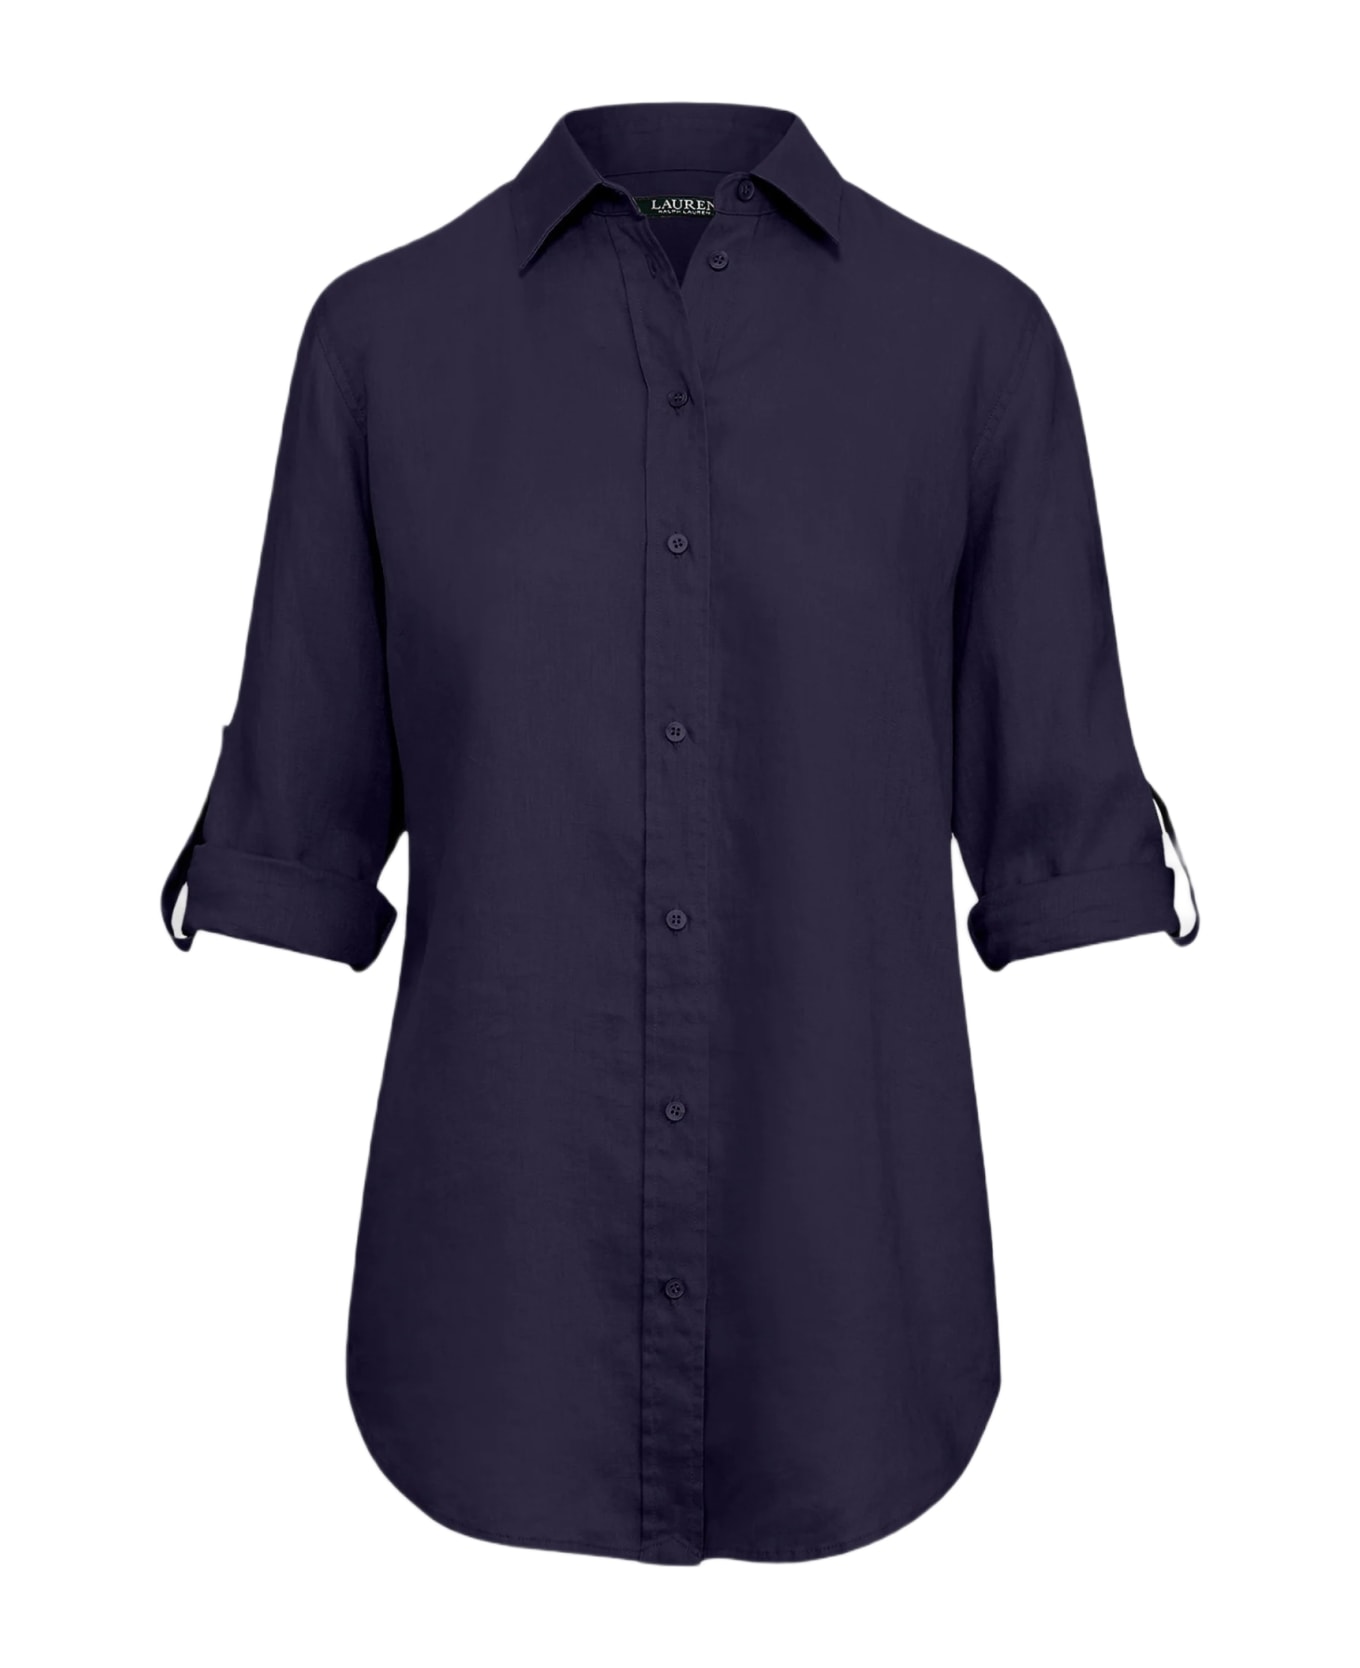 Ralph Lauren Karrie Long Sleeve Shirt - Lauren Navy シャツ